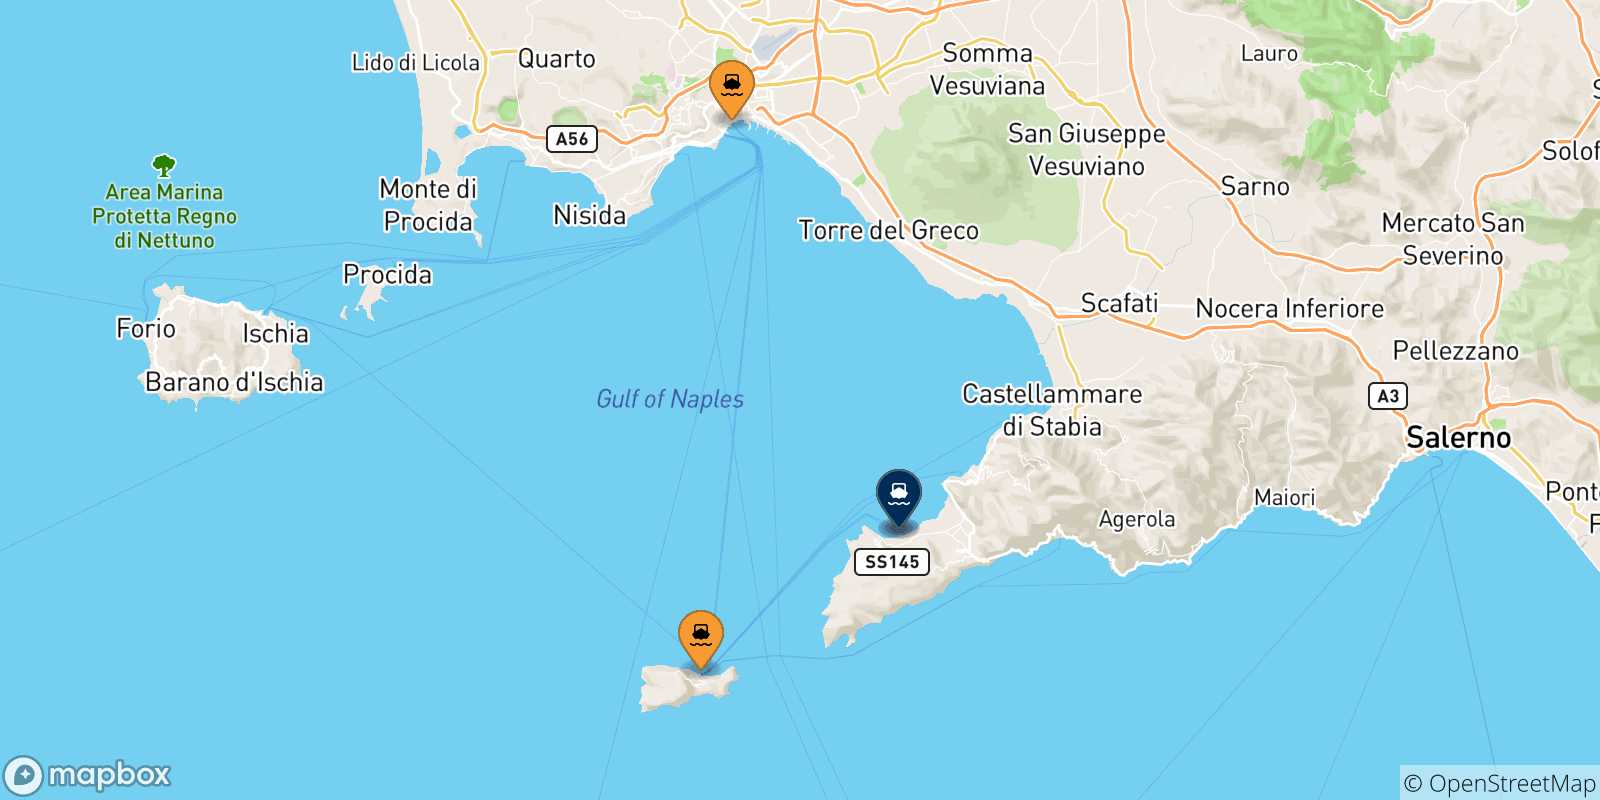 Mappa delle possibili rotte tra l'Italia e Castellammare